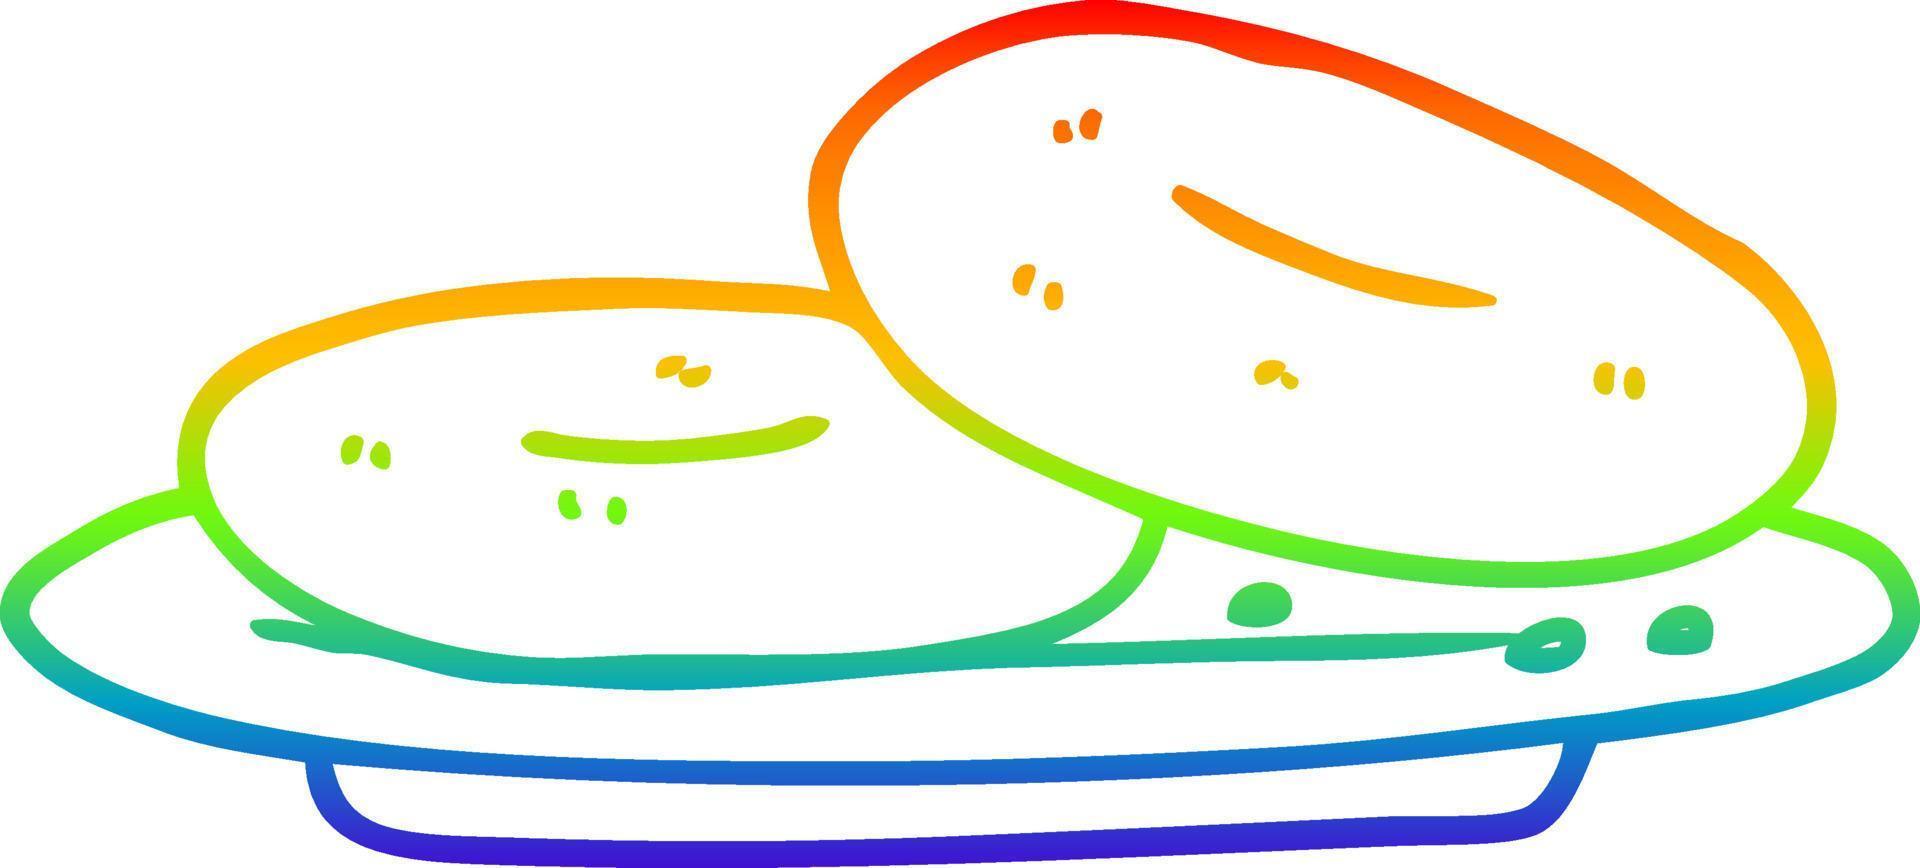 ciambelle del fumetto di disegno a tratteggio sfumato arcobaleno vettore